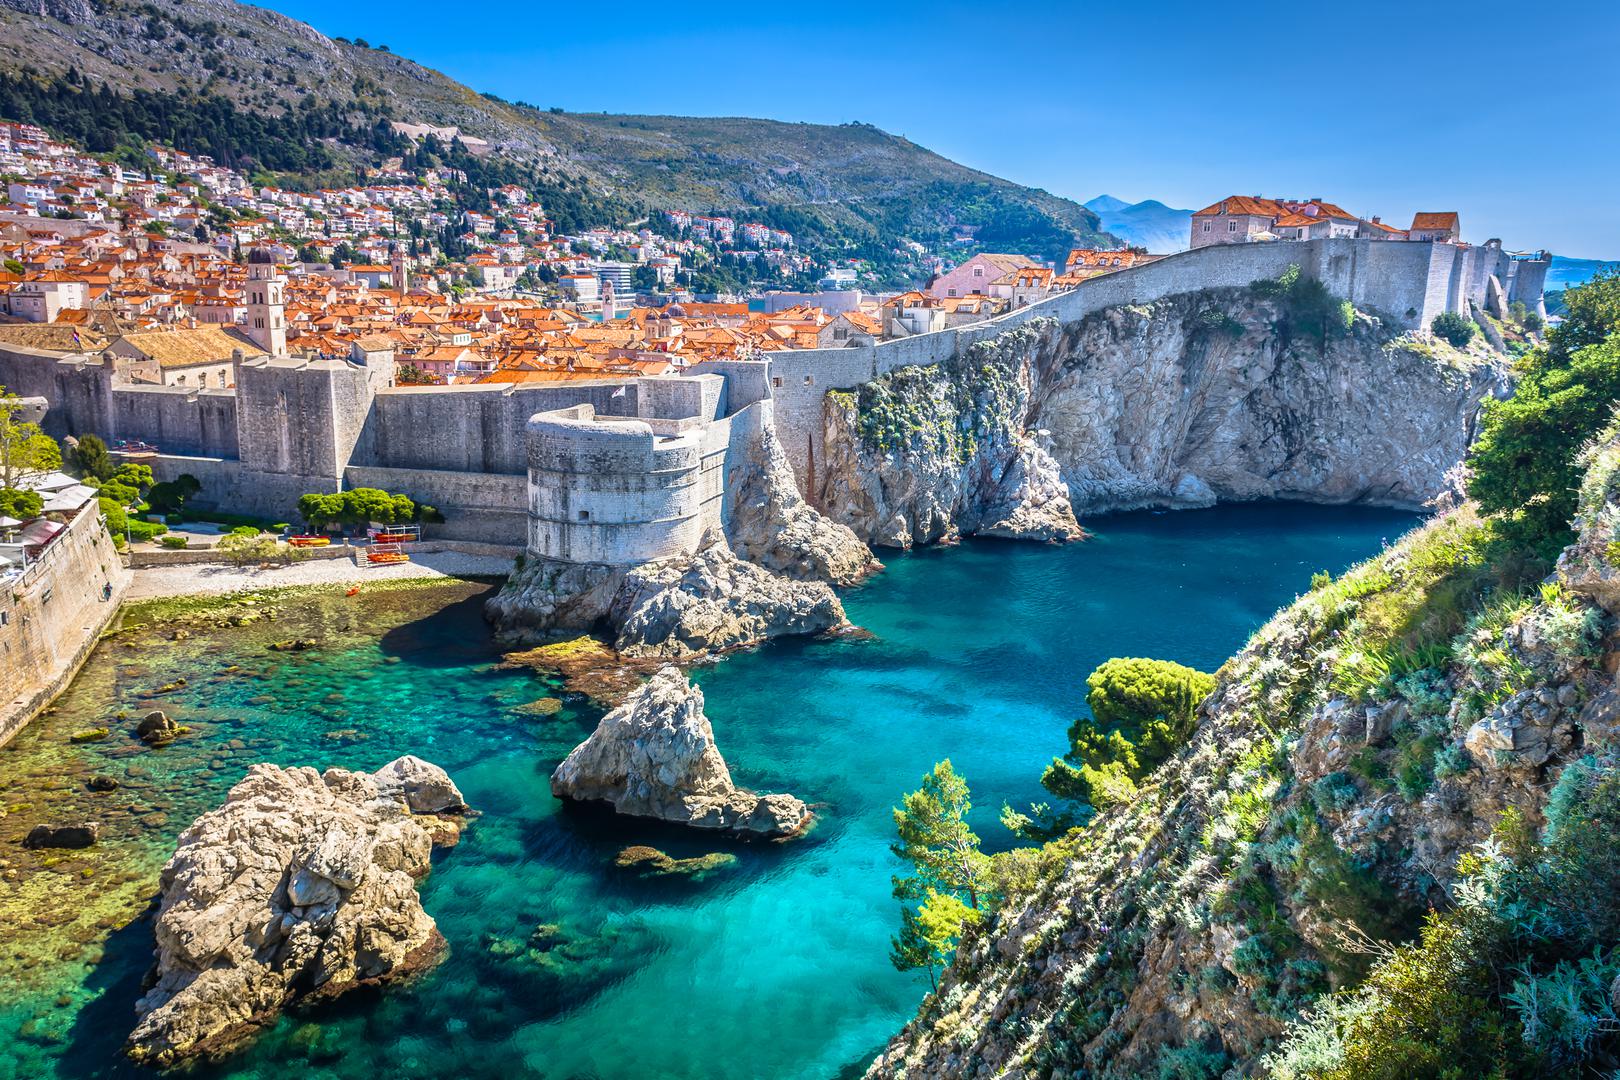 5. Dubrovnik je bio značajna samostalna republika 450 godina. Dubrovačka Republika, kako je bila poznata, bila je glavni suparnik Venecije na Jadranu.